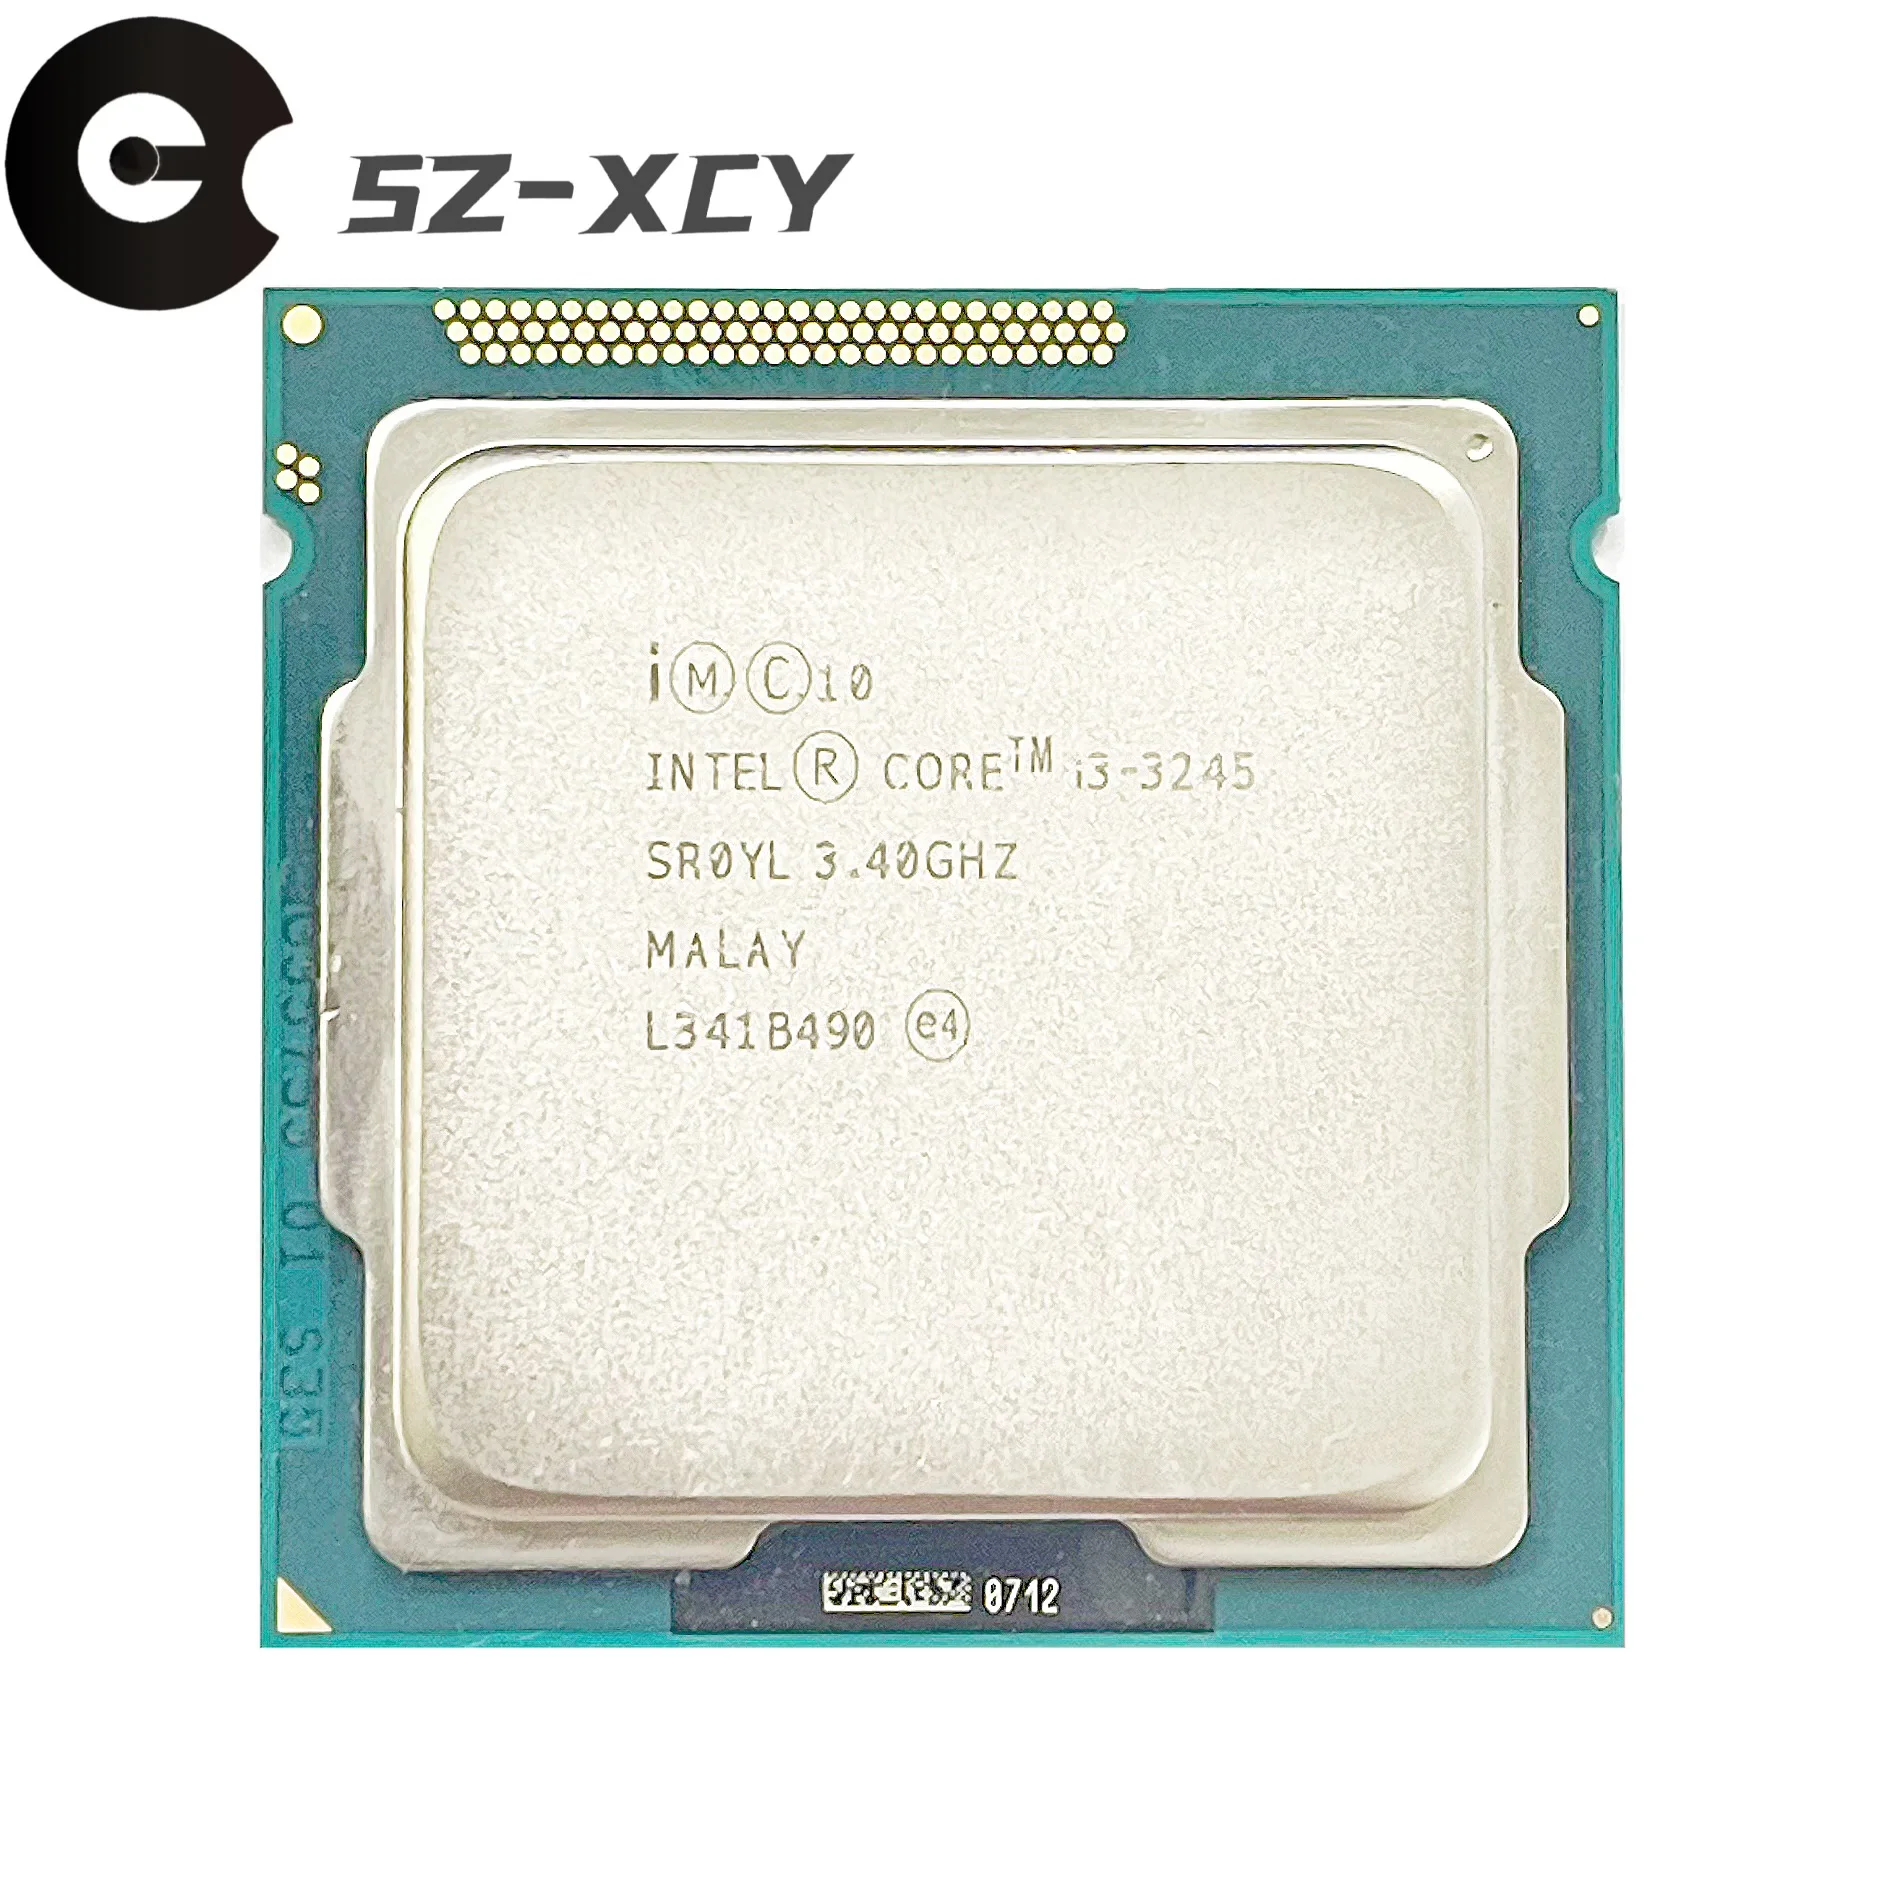 Intel Core i3-3245 i3 3245 3.4 GHz Dual-Core CPU Processor 3M 55W LGA 1155